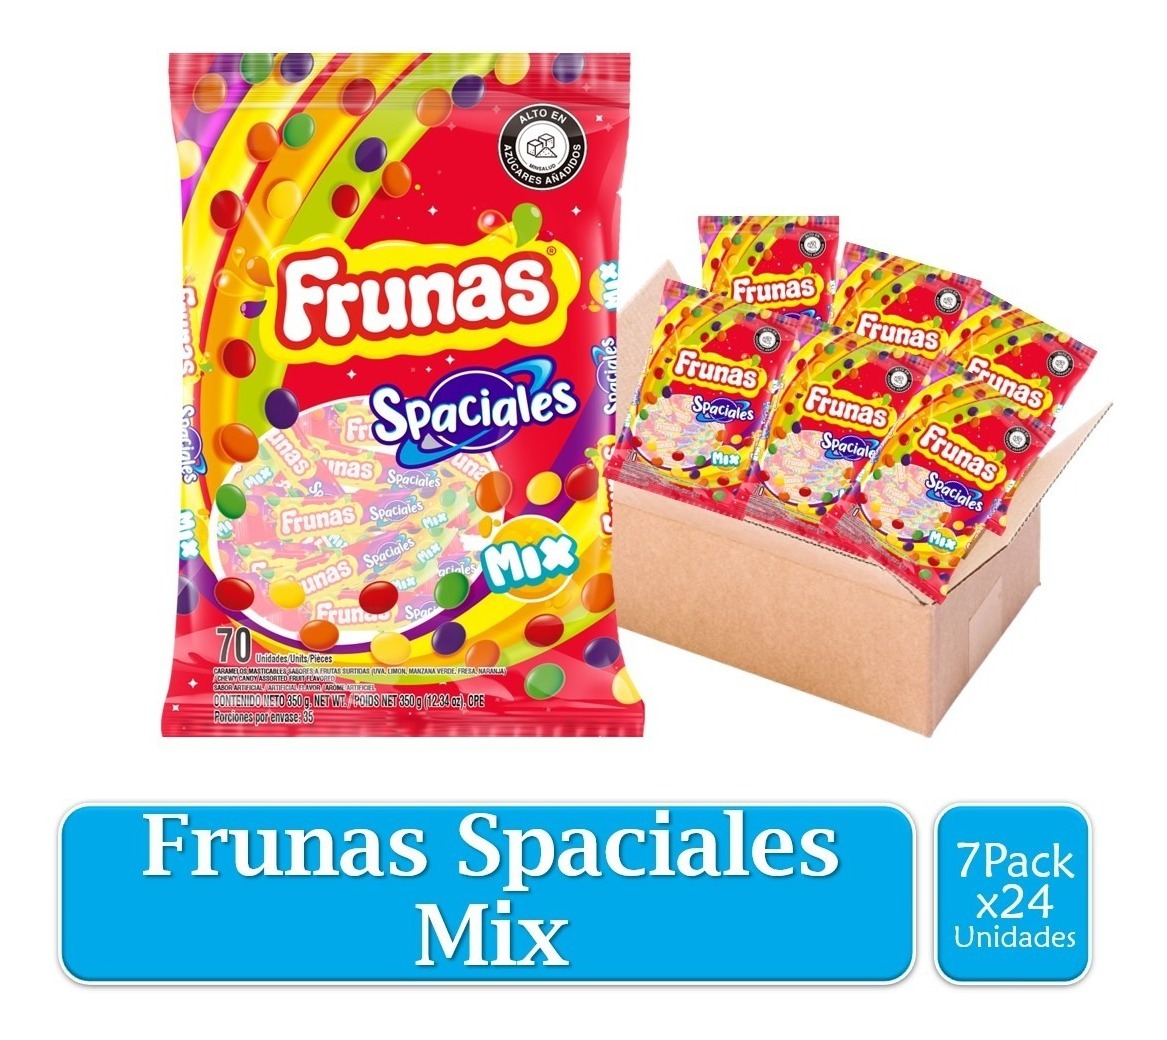 Frunas Dulces Spaciales Mix 7 Paquetes X70 Uds